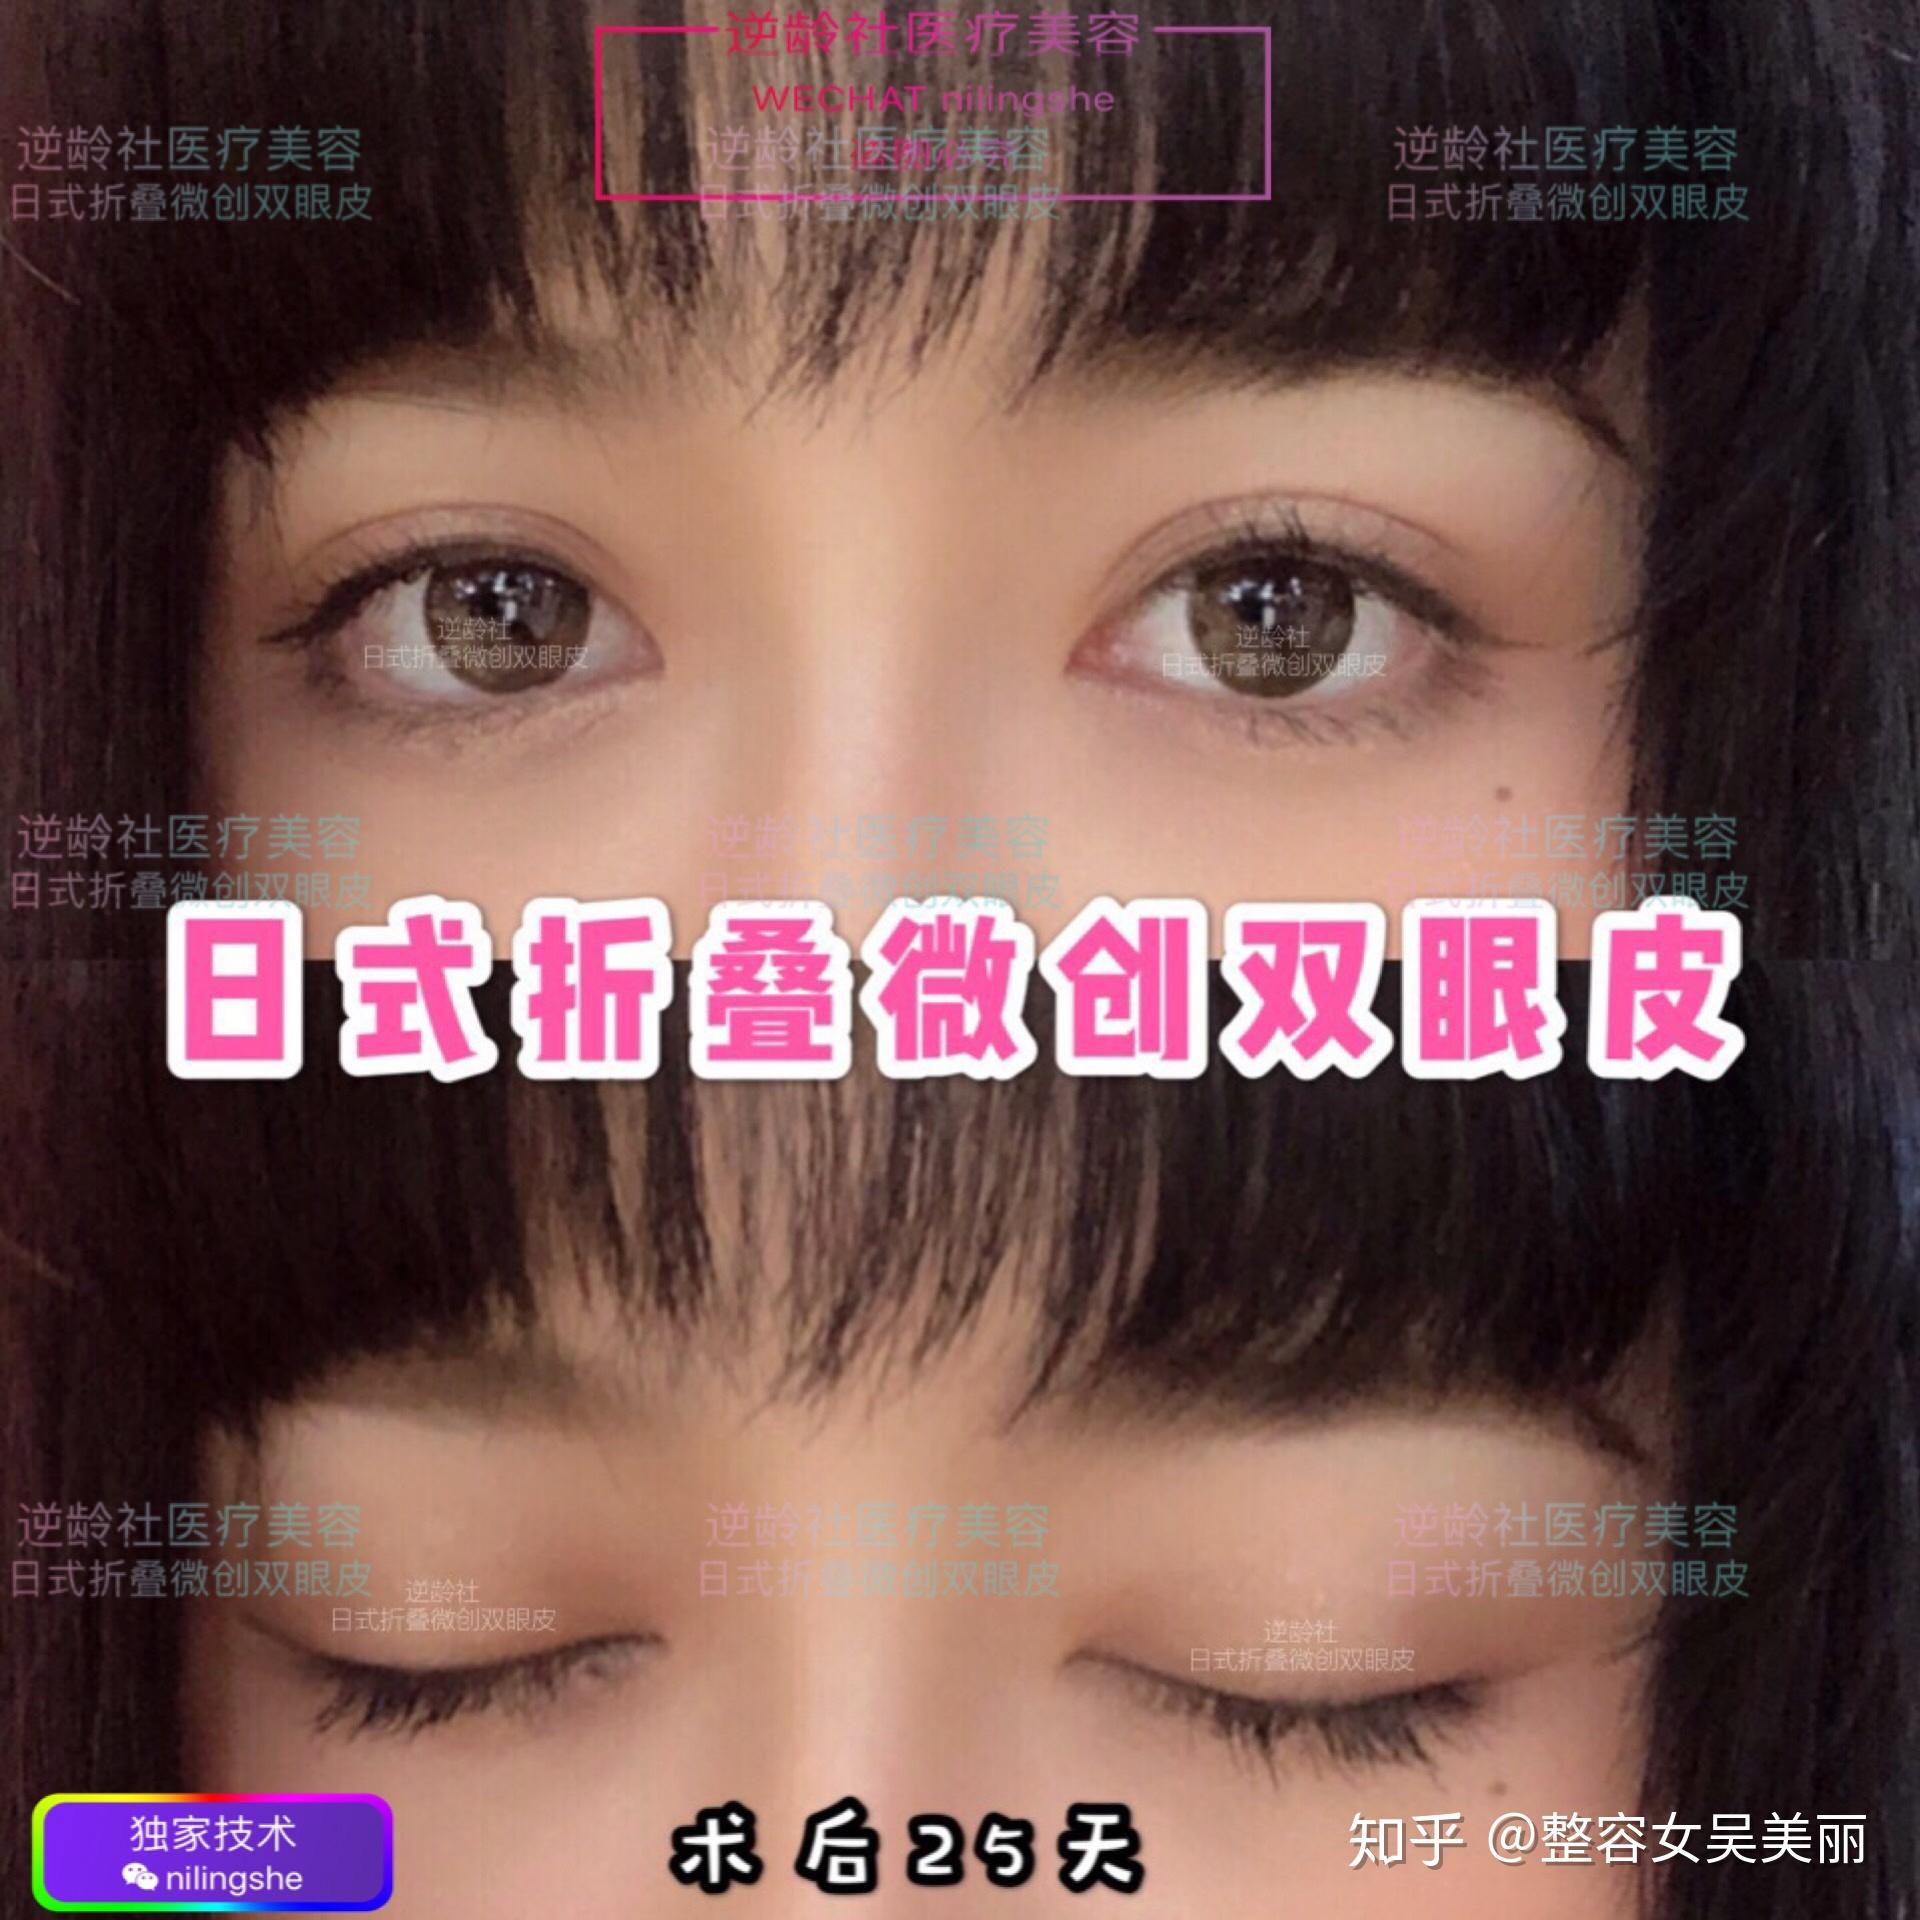 【医美大咖秀】上海日式无痕双眼皮专家-杜银燕医生_上海日式整形